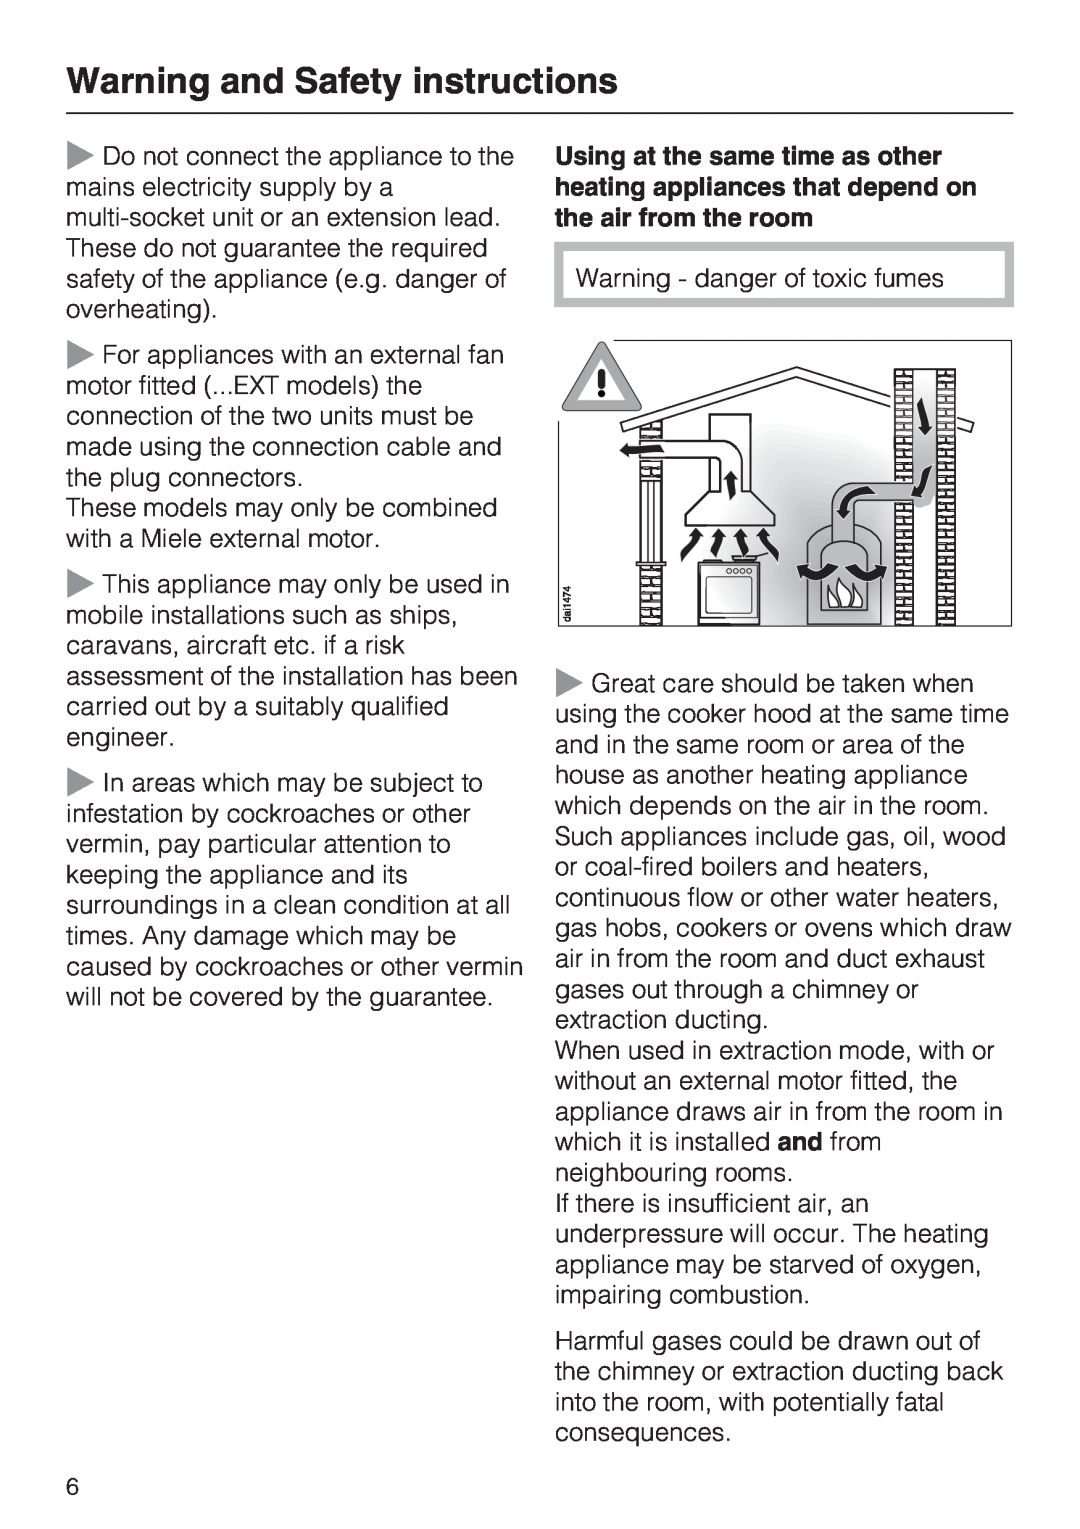 Miele DA 3190, DA 3160 installation instructions Warning and Safety instructions, Warning - danger of toxic fumes 